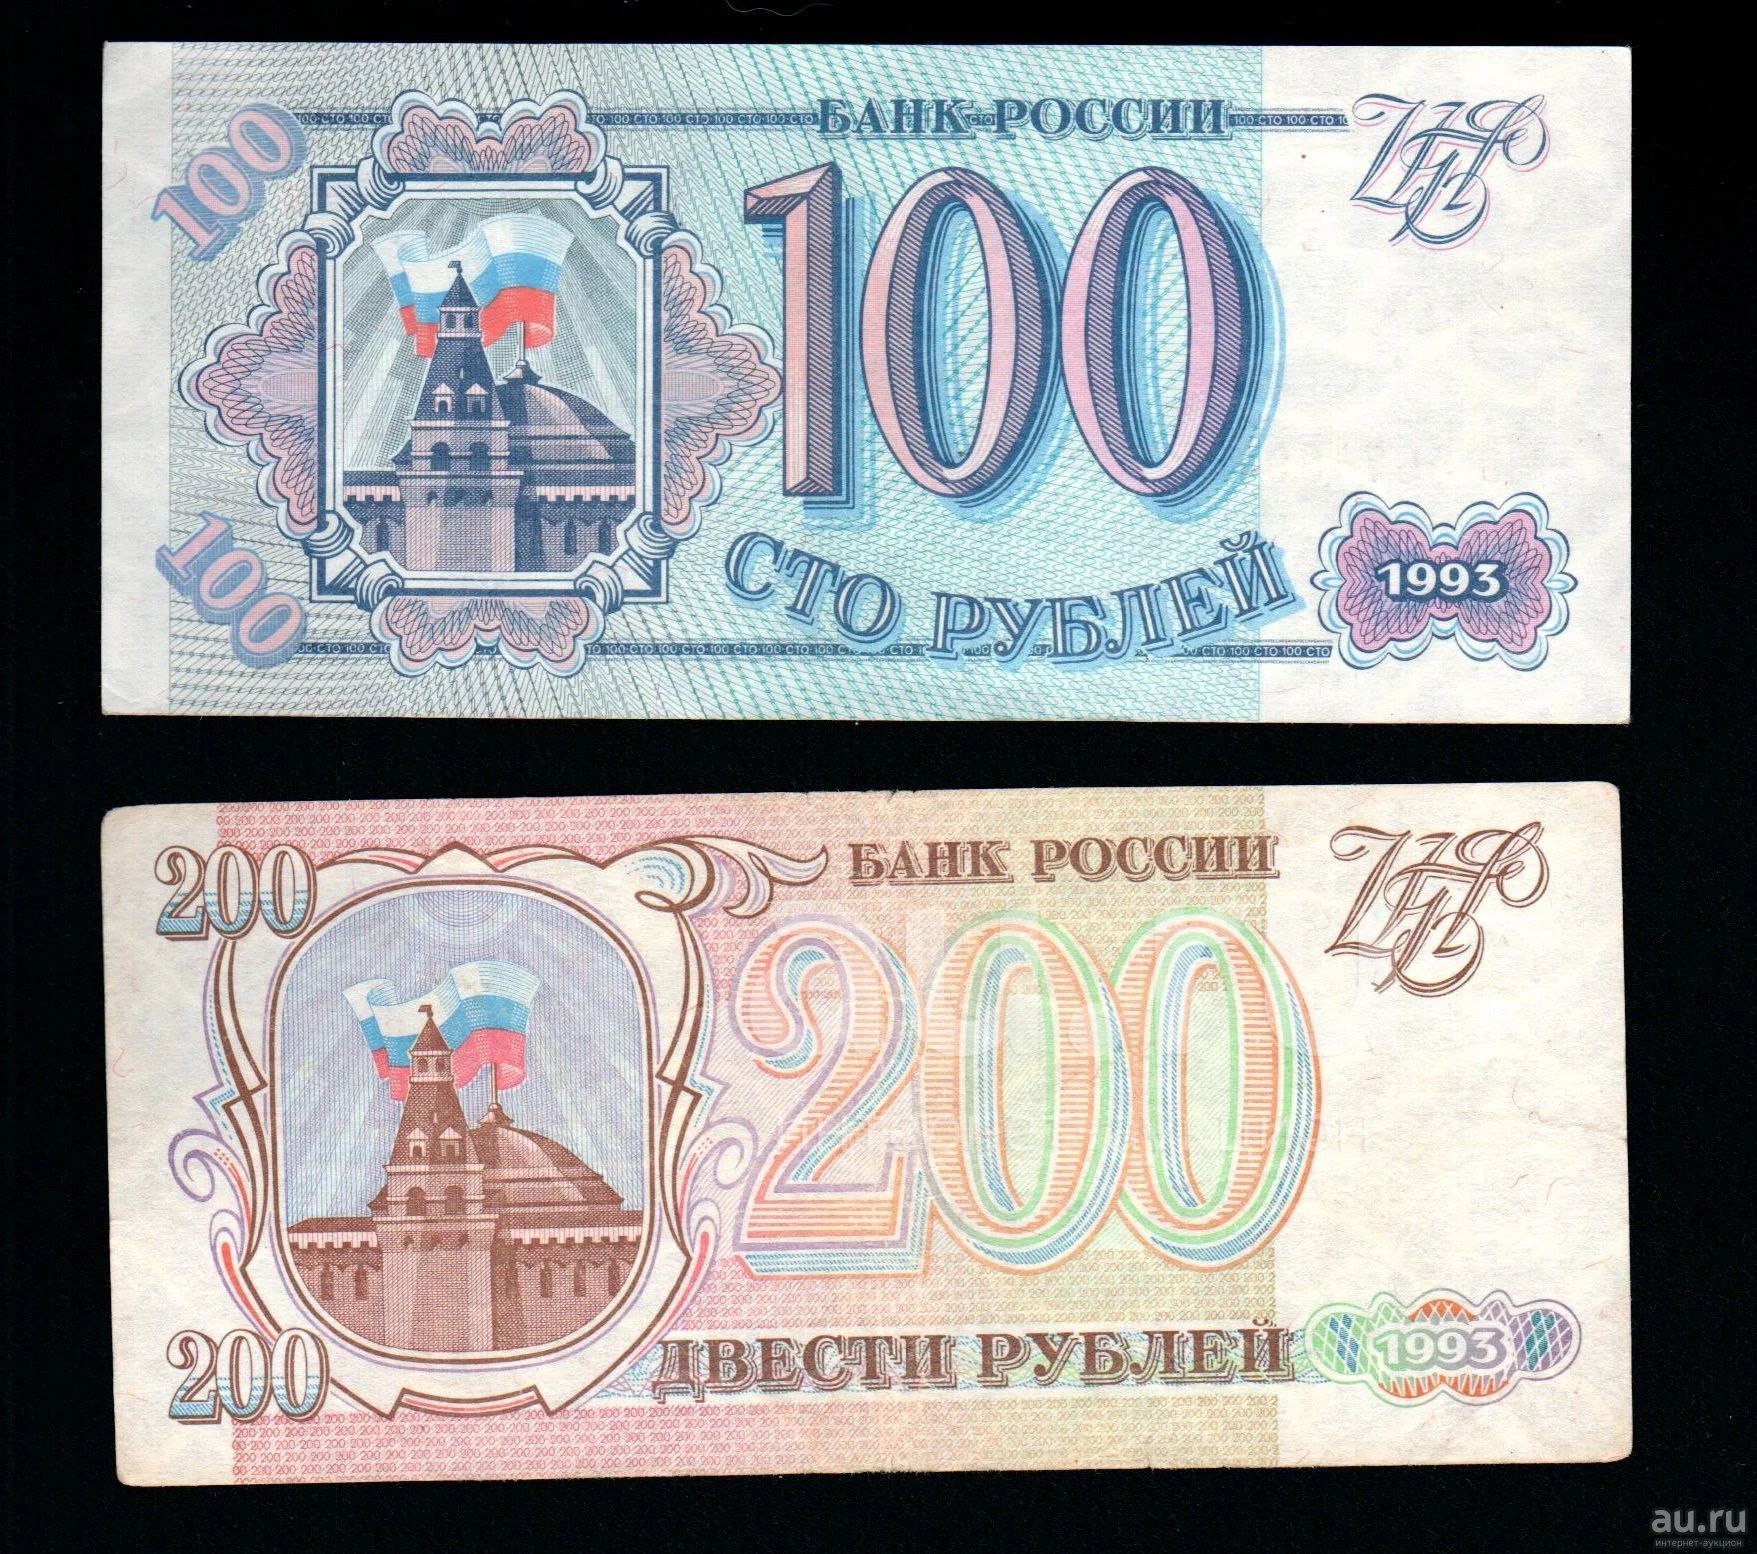 Сколько стоит 100 рублей 1000. Купюра 200 рублей 1993. 100 И 200 рублей 1993. 100 Рублей 1993 года. Купюра 200 рублей 1993 года.